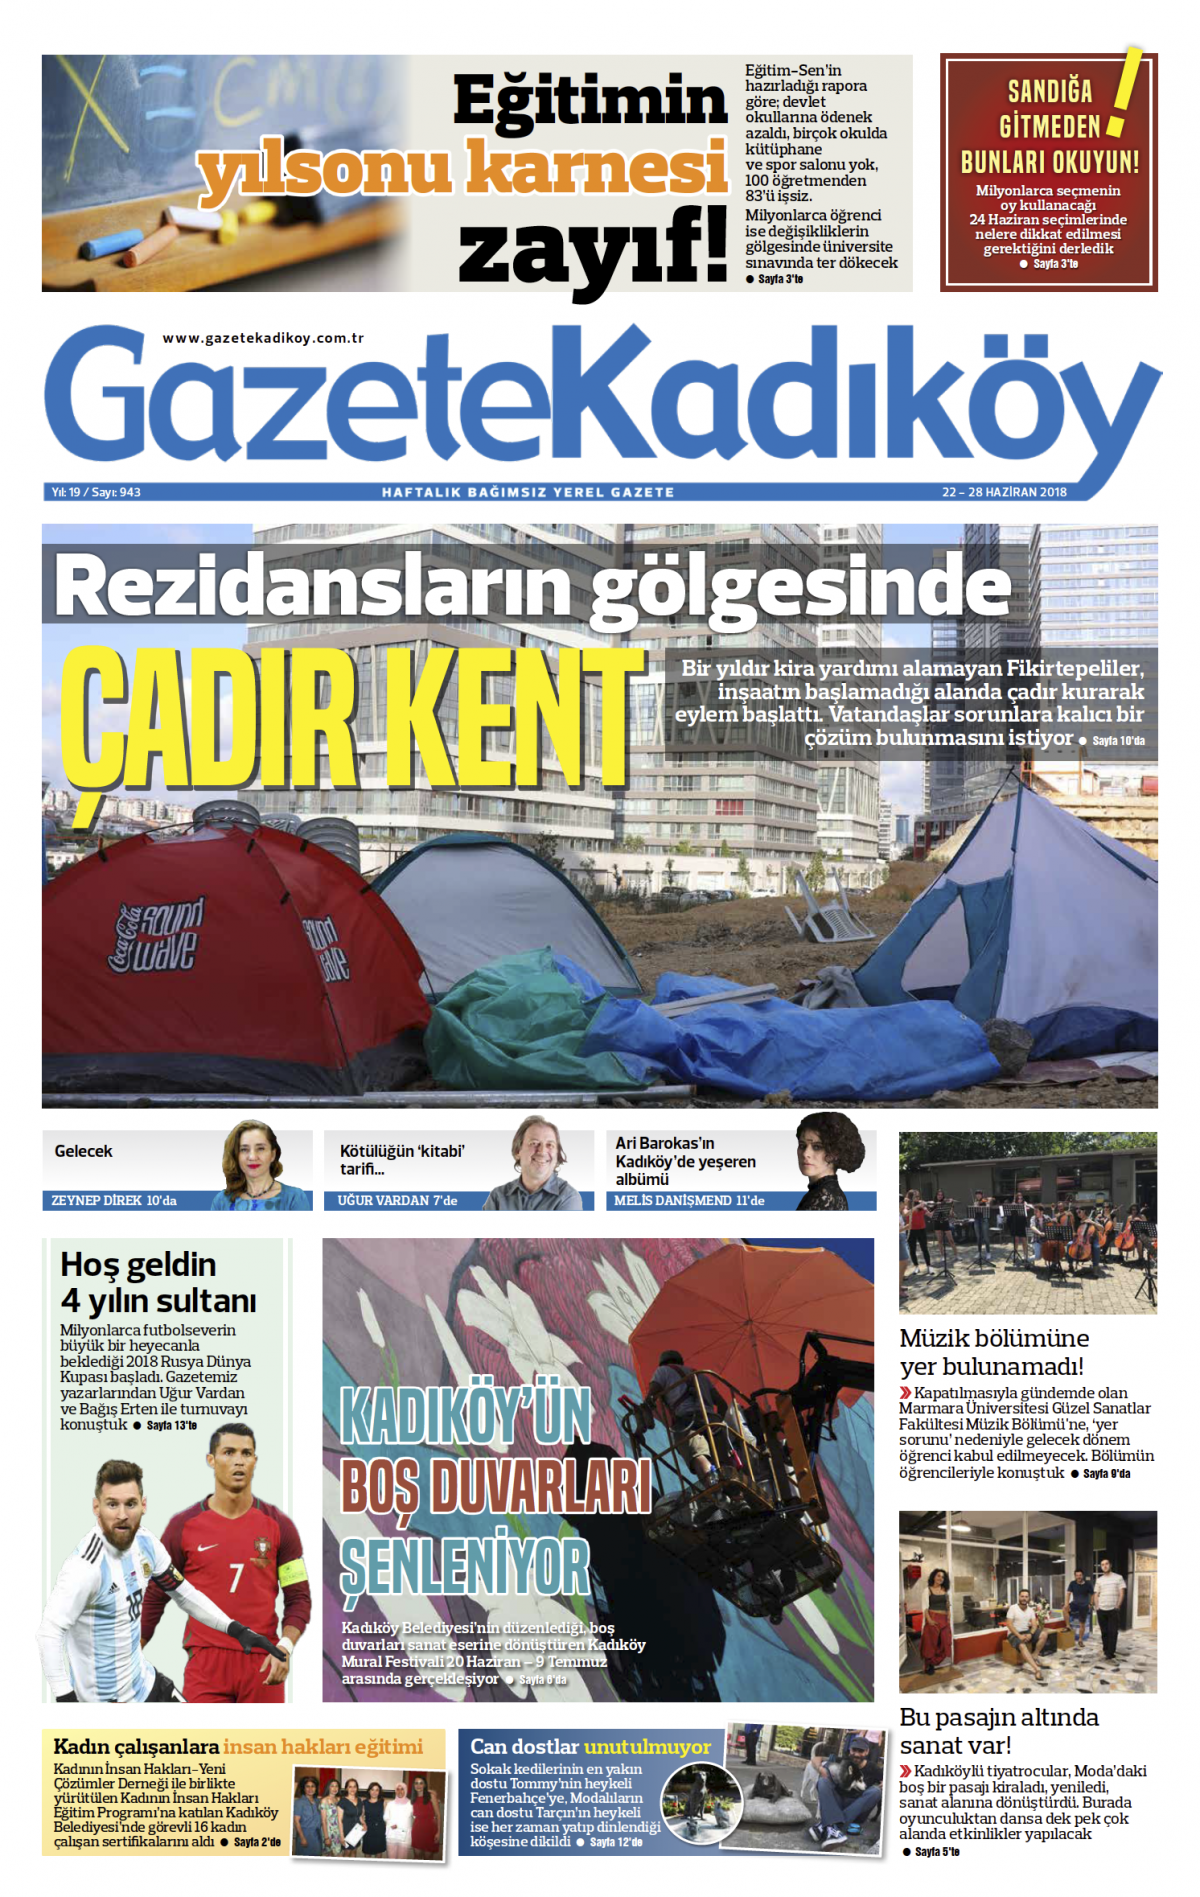 Gazete Kadıköy - 943. SAYI